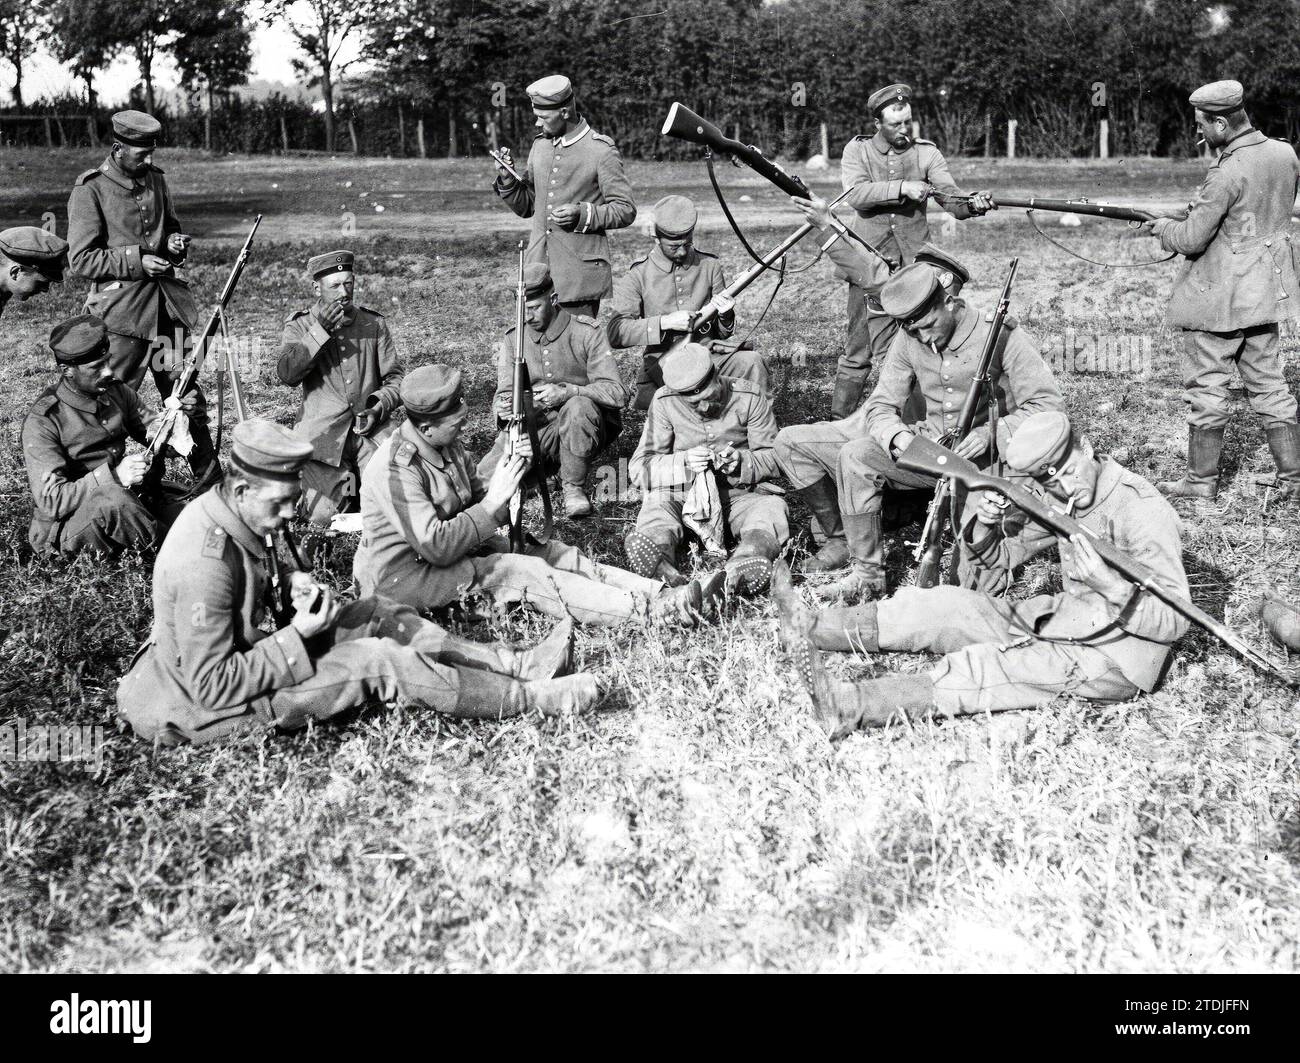 Germania. Ottobre 1914. Preparativi per la lotta. I soldati tedeschi puliscono ed esaminano i loro fucili nel campo. Crediti: Album / Archivo ABC Foto Stock